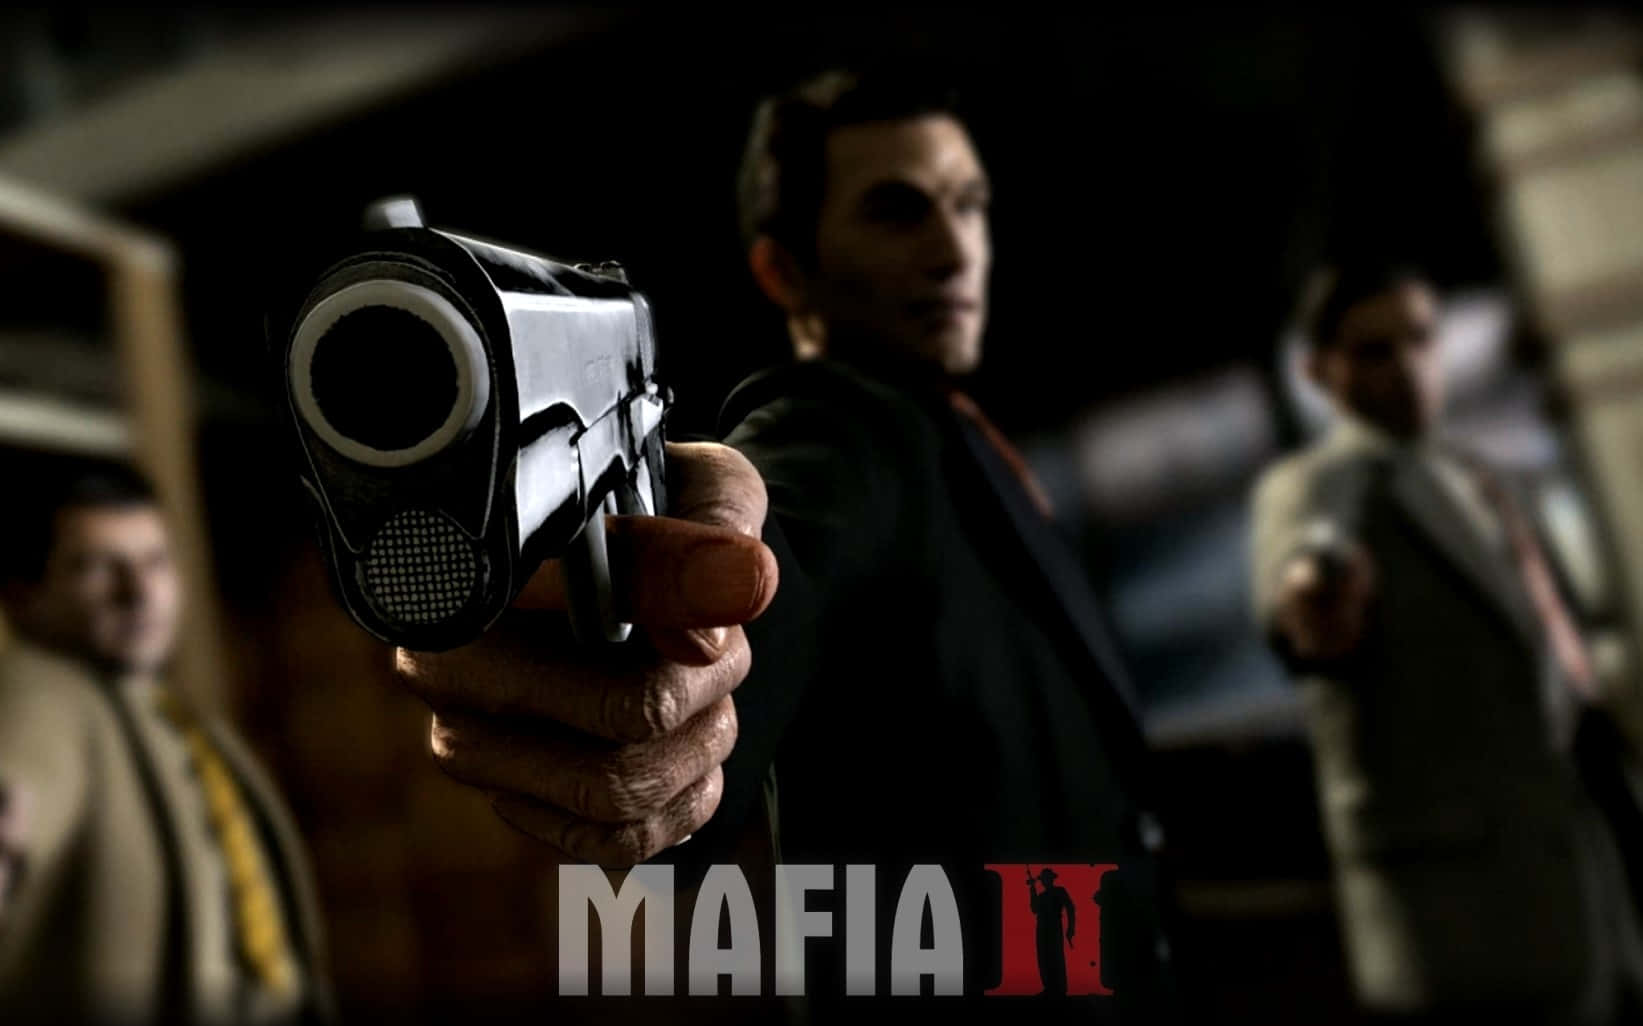 Mafiaii Gangsters Med Vapen. Wallpaper